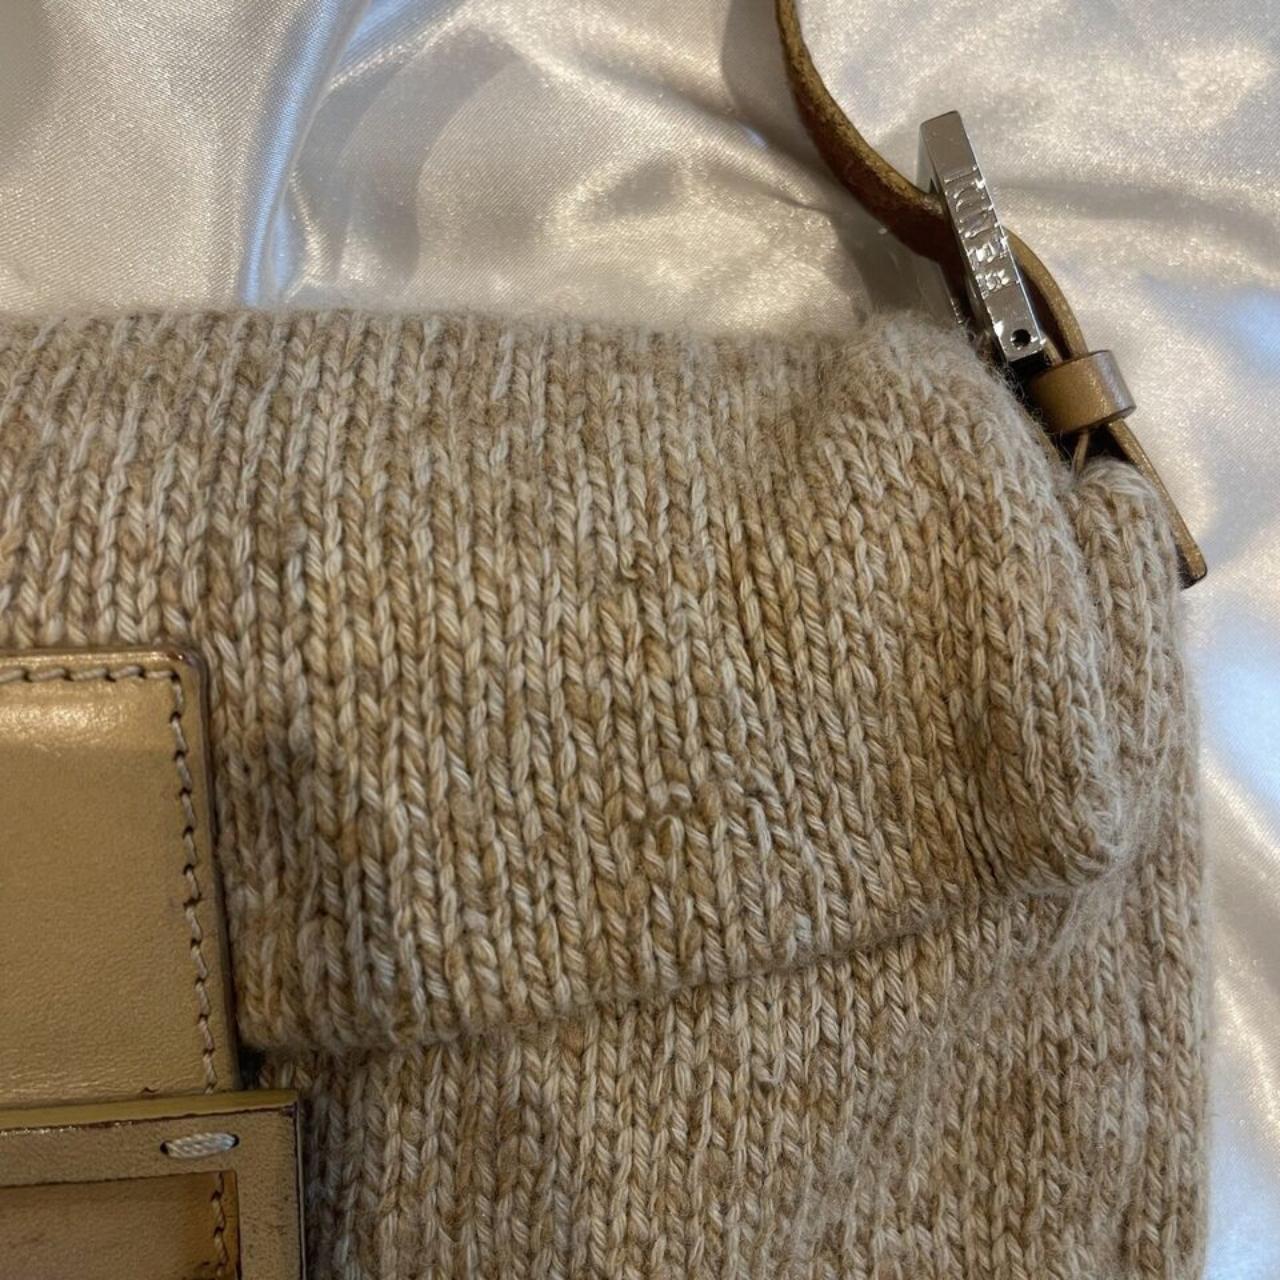 Authentic Fendi VINTAGE shoulder bag CHEAPEST ON - Depop